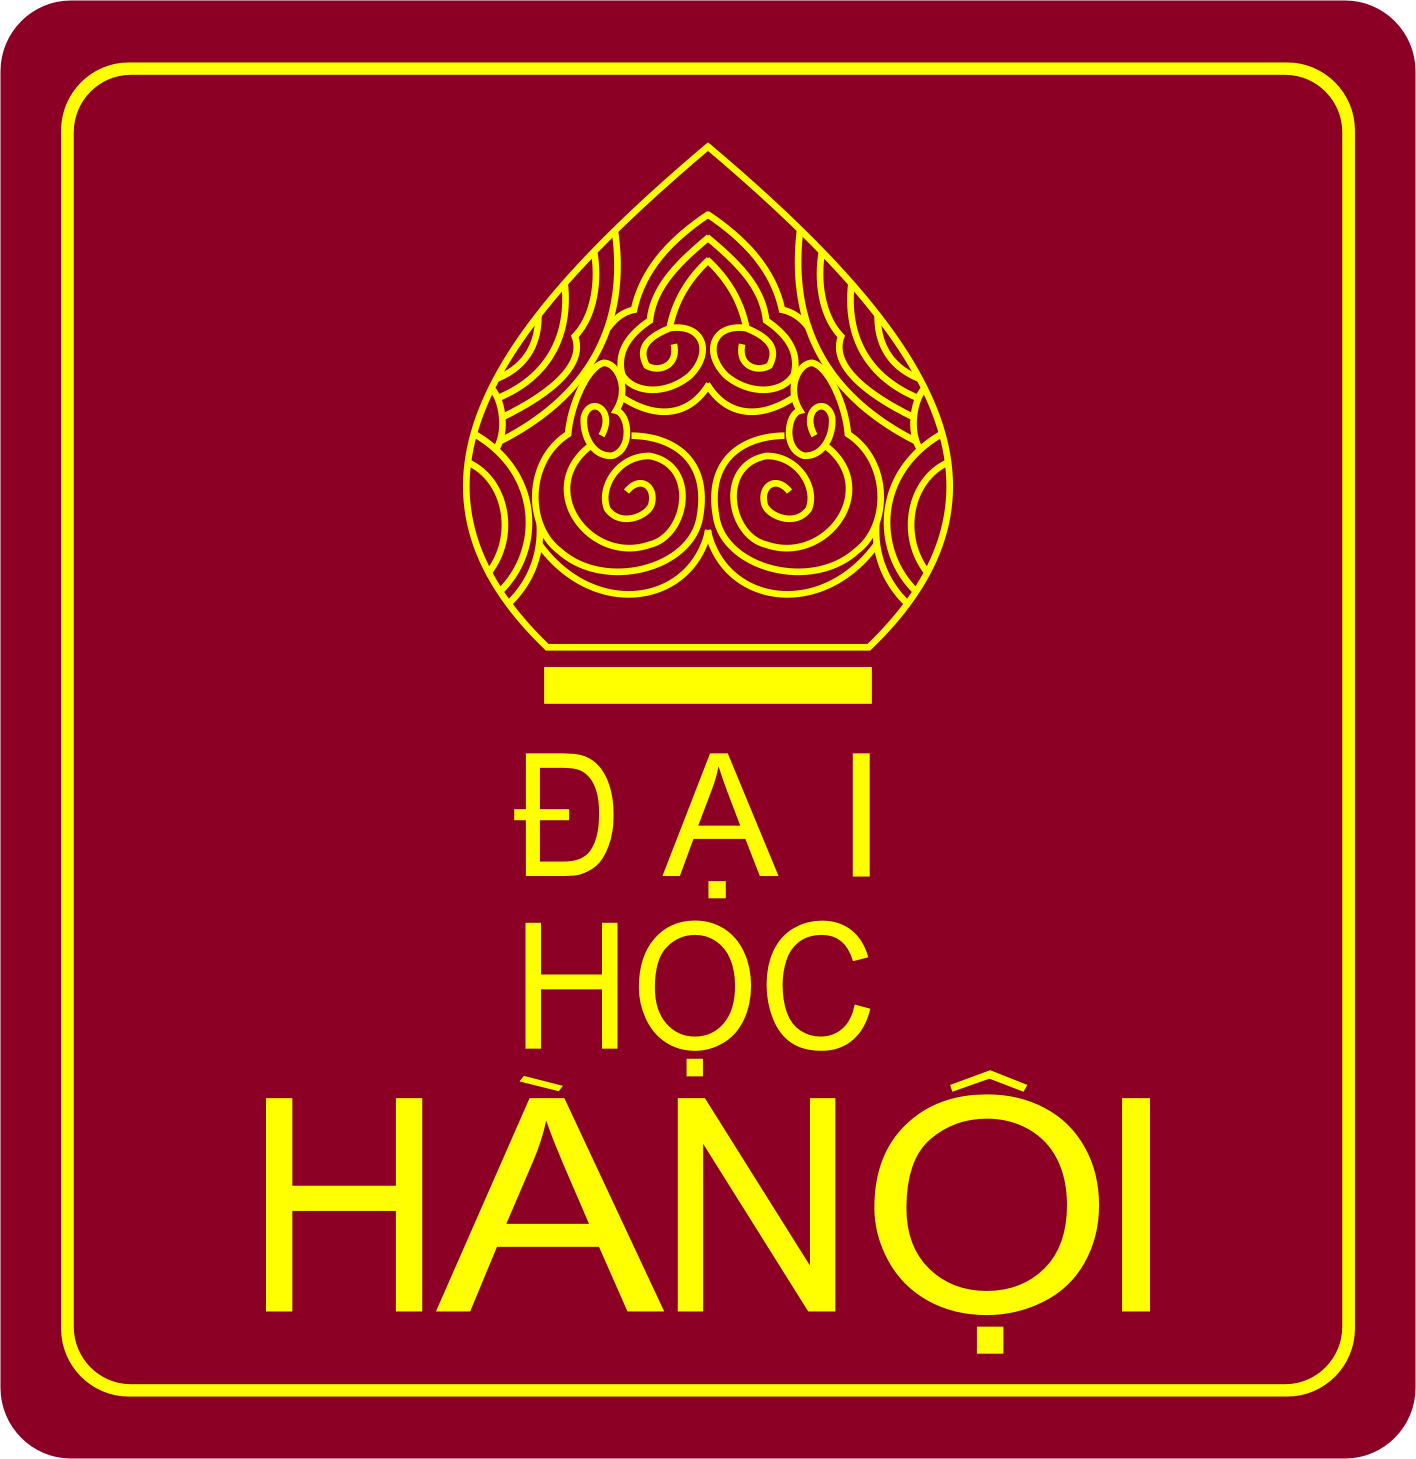 Trường Đại học Hà Nội là trường đào tạo chuyên ngành tiếng Hàn chất lượng